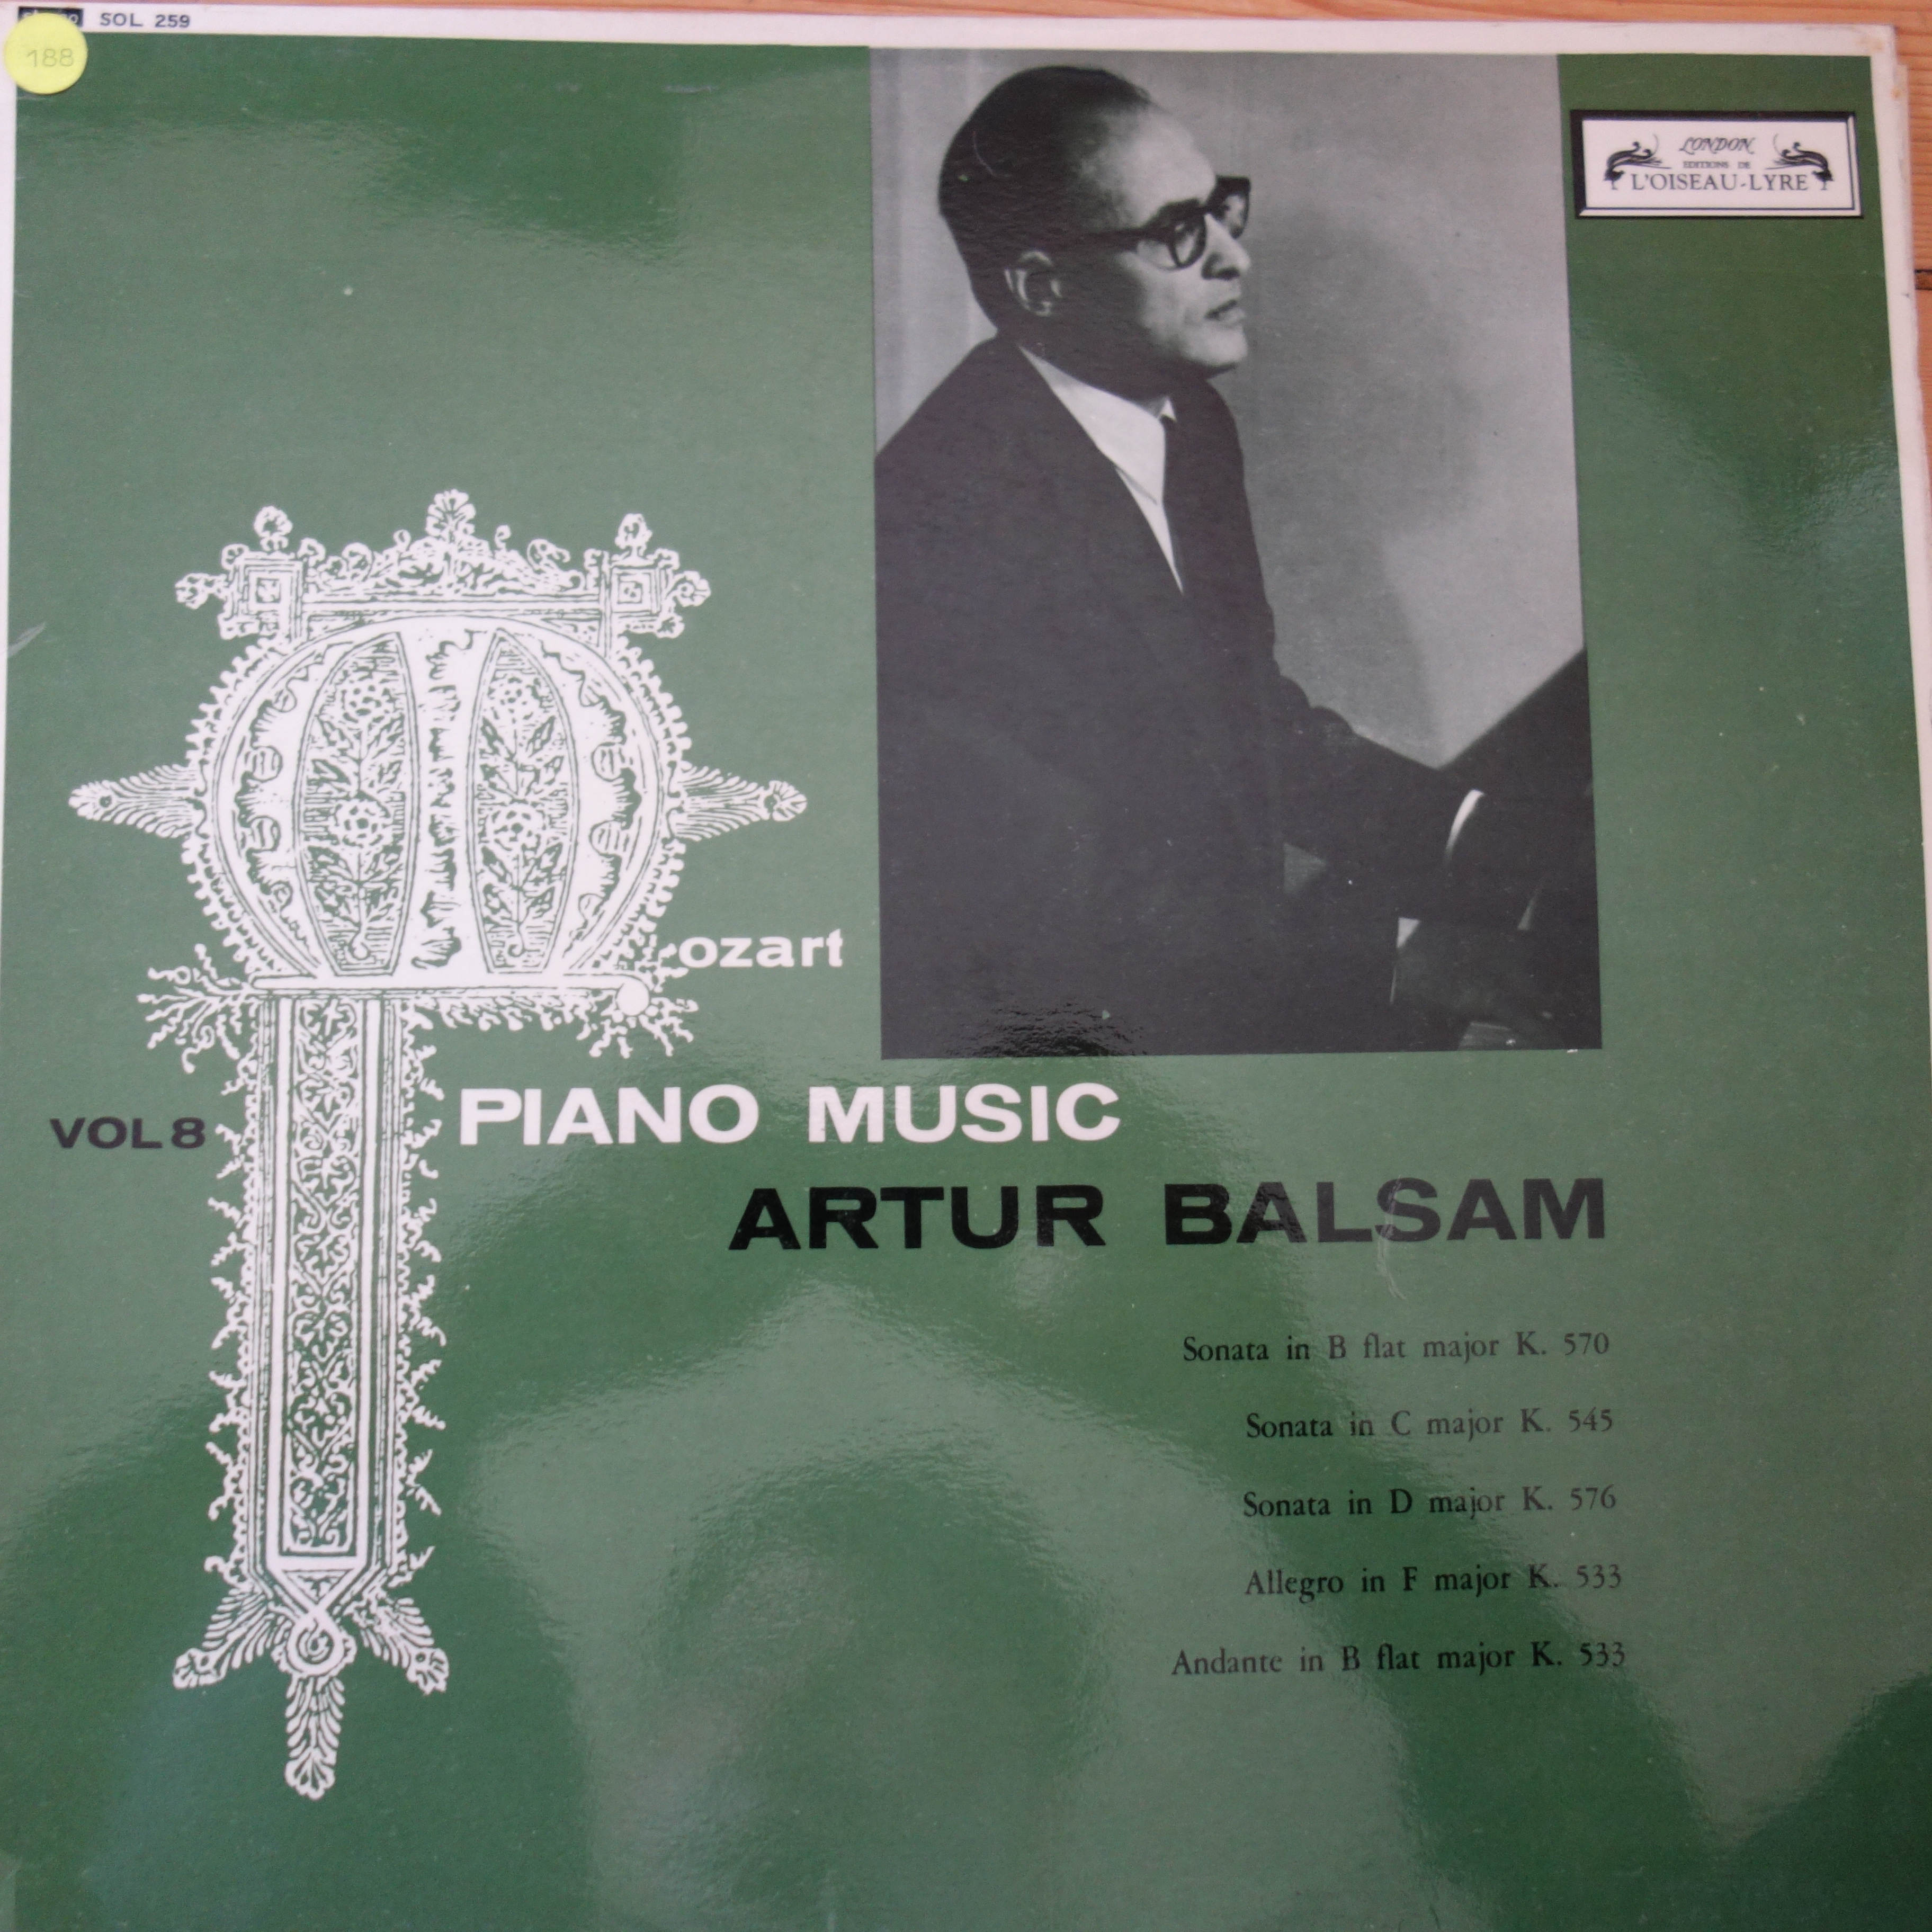 SOL 259 Mozart Piano Music Vol. 8 / Artur Balsam